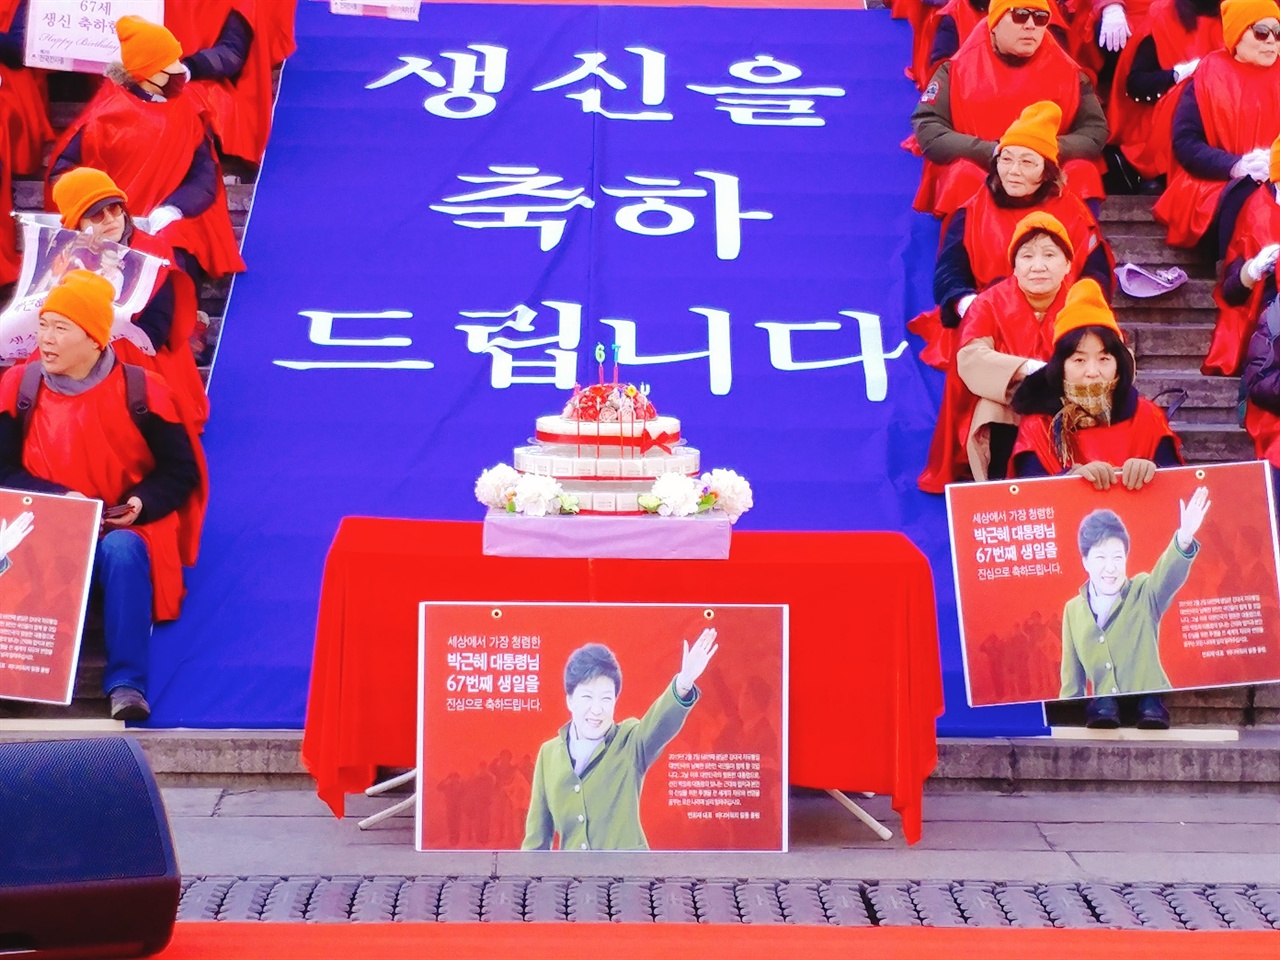 세종문화회관 앞, 박 전 대통령의 67번째 생일을 하루 앞두고 가진 생일축하 행사